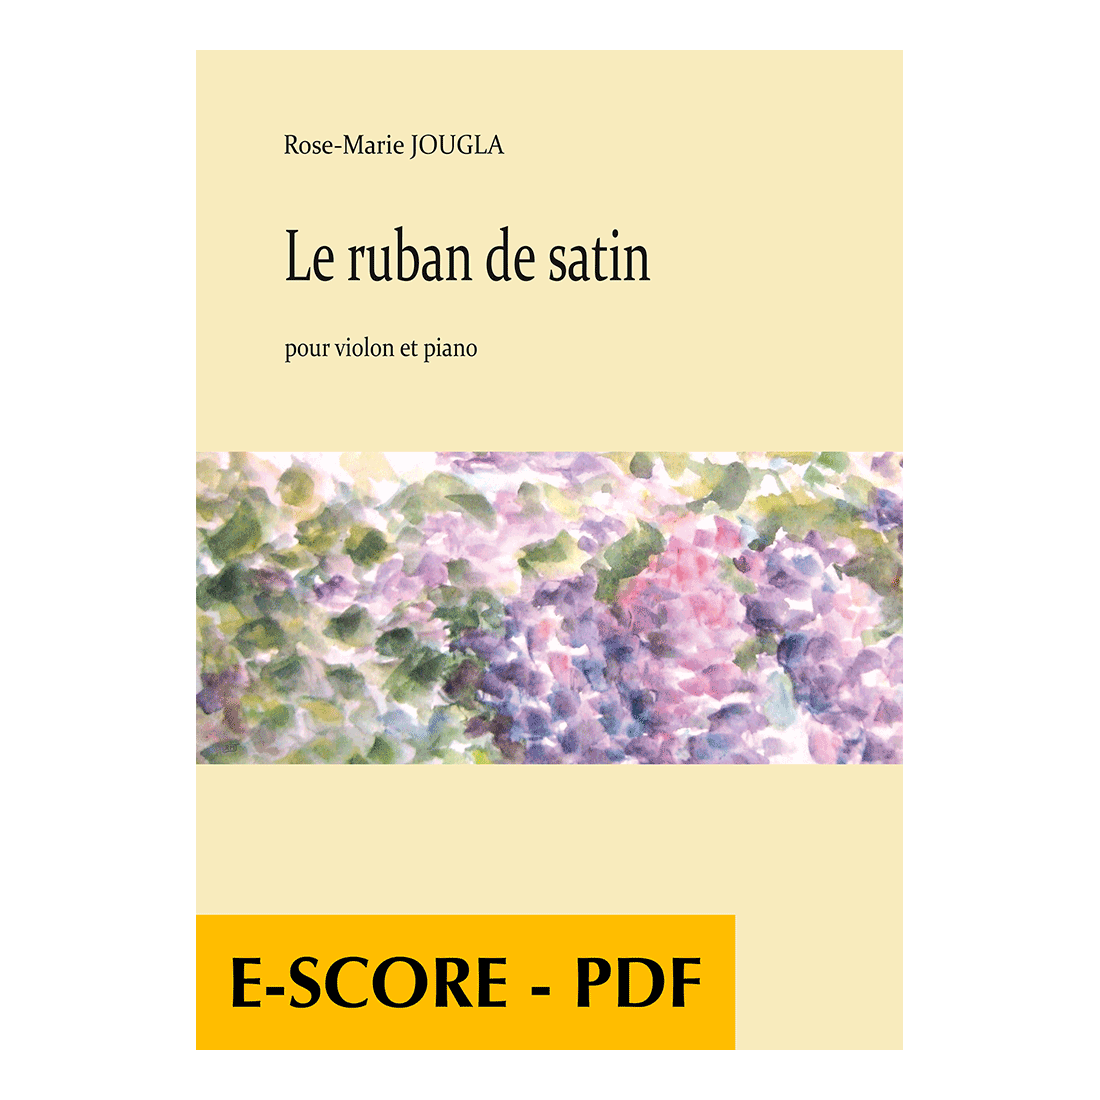 Le ruban de satin pour violon et piano - E-score PDF